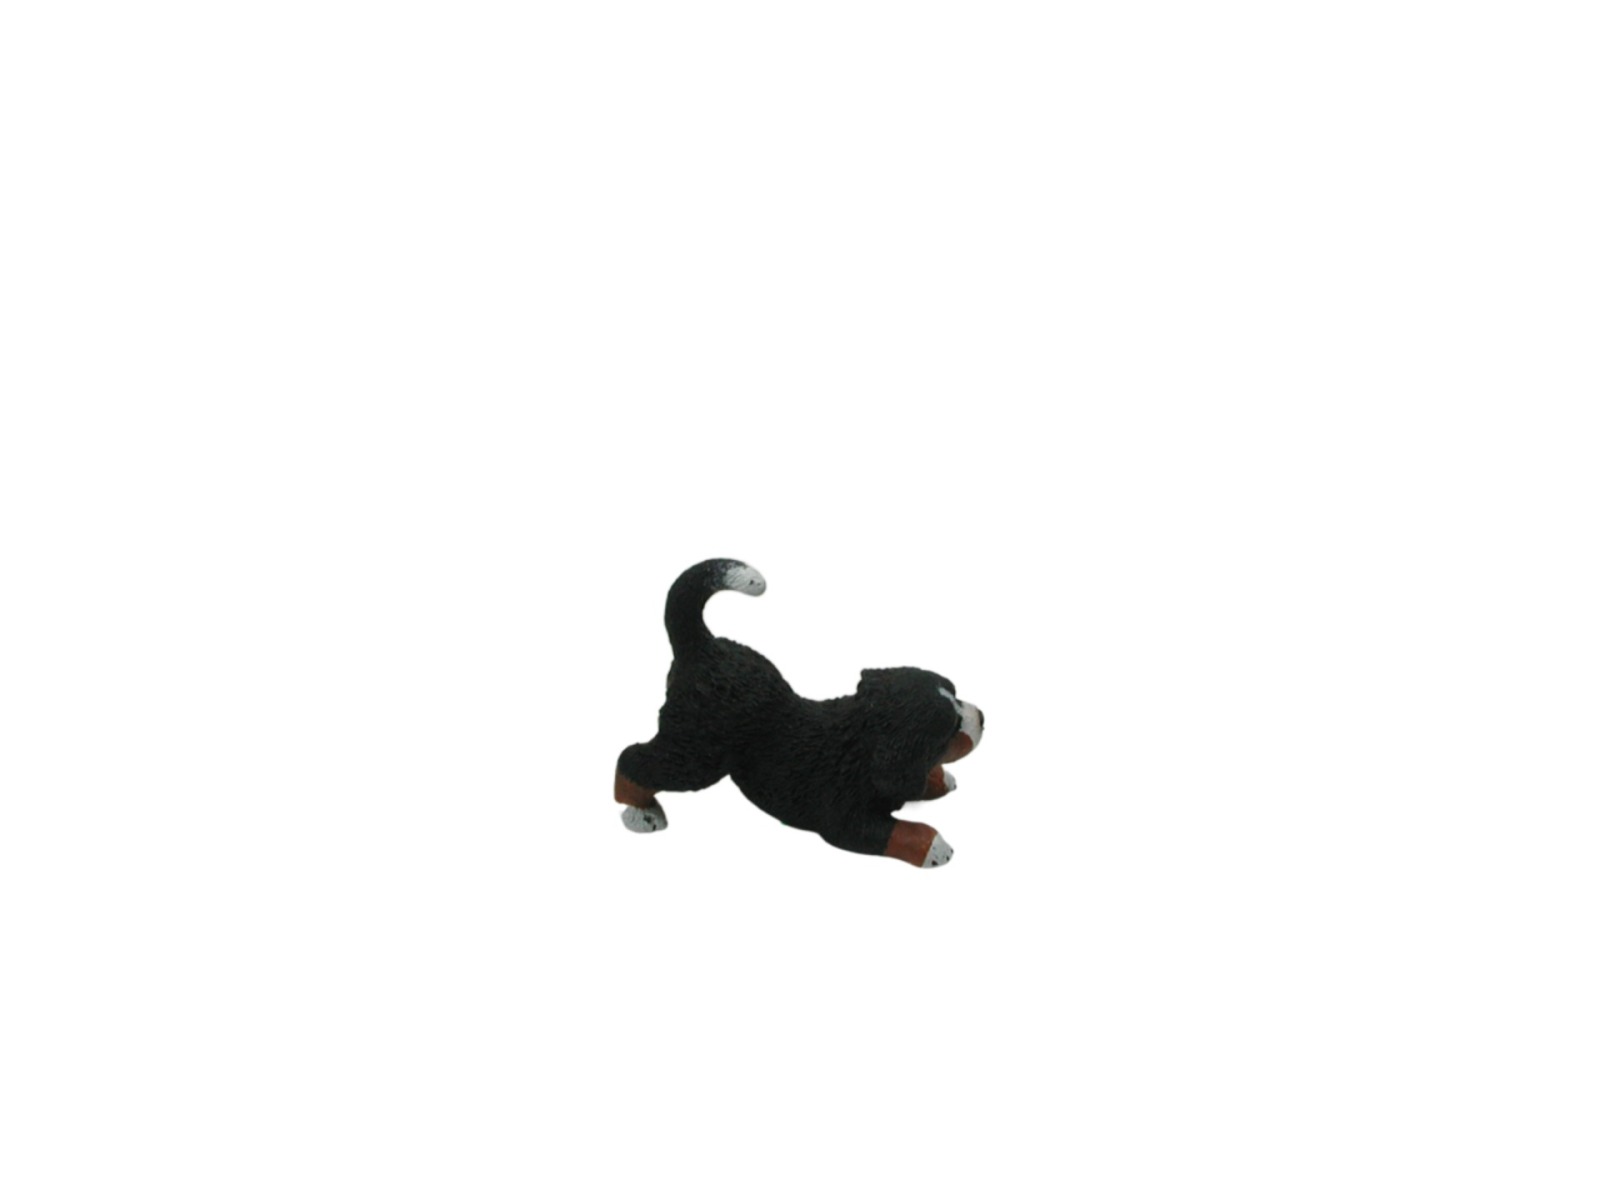 Berner Sennenhund Welpe